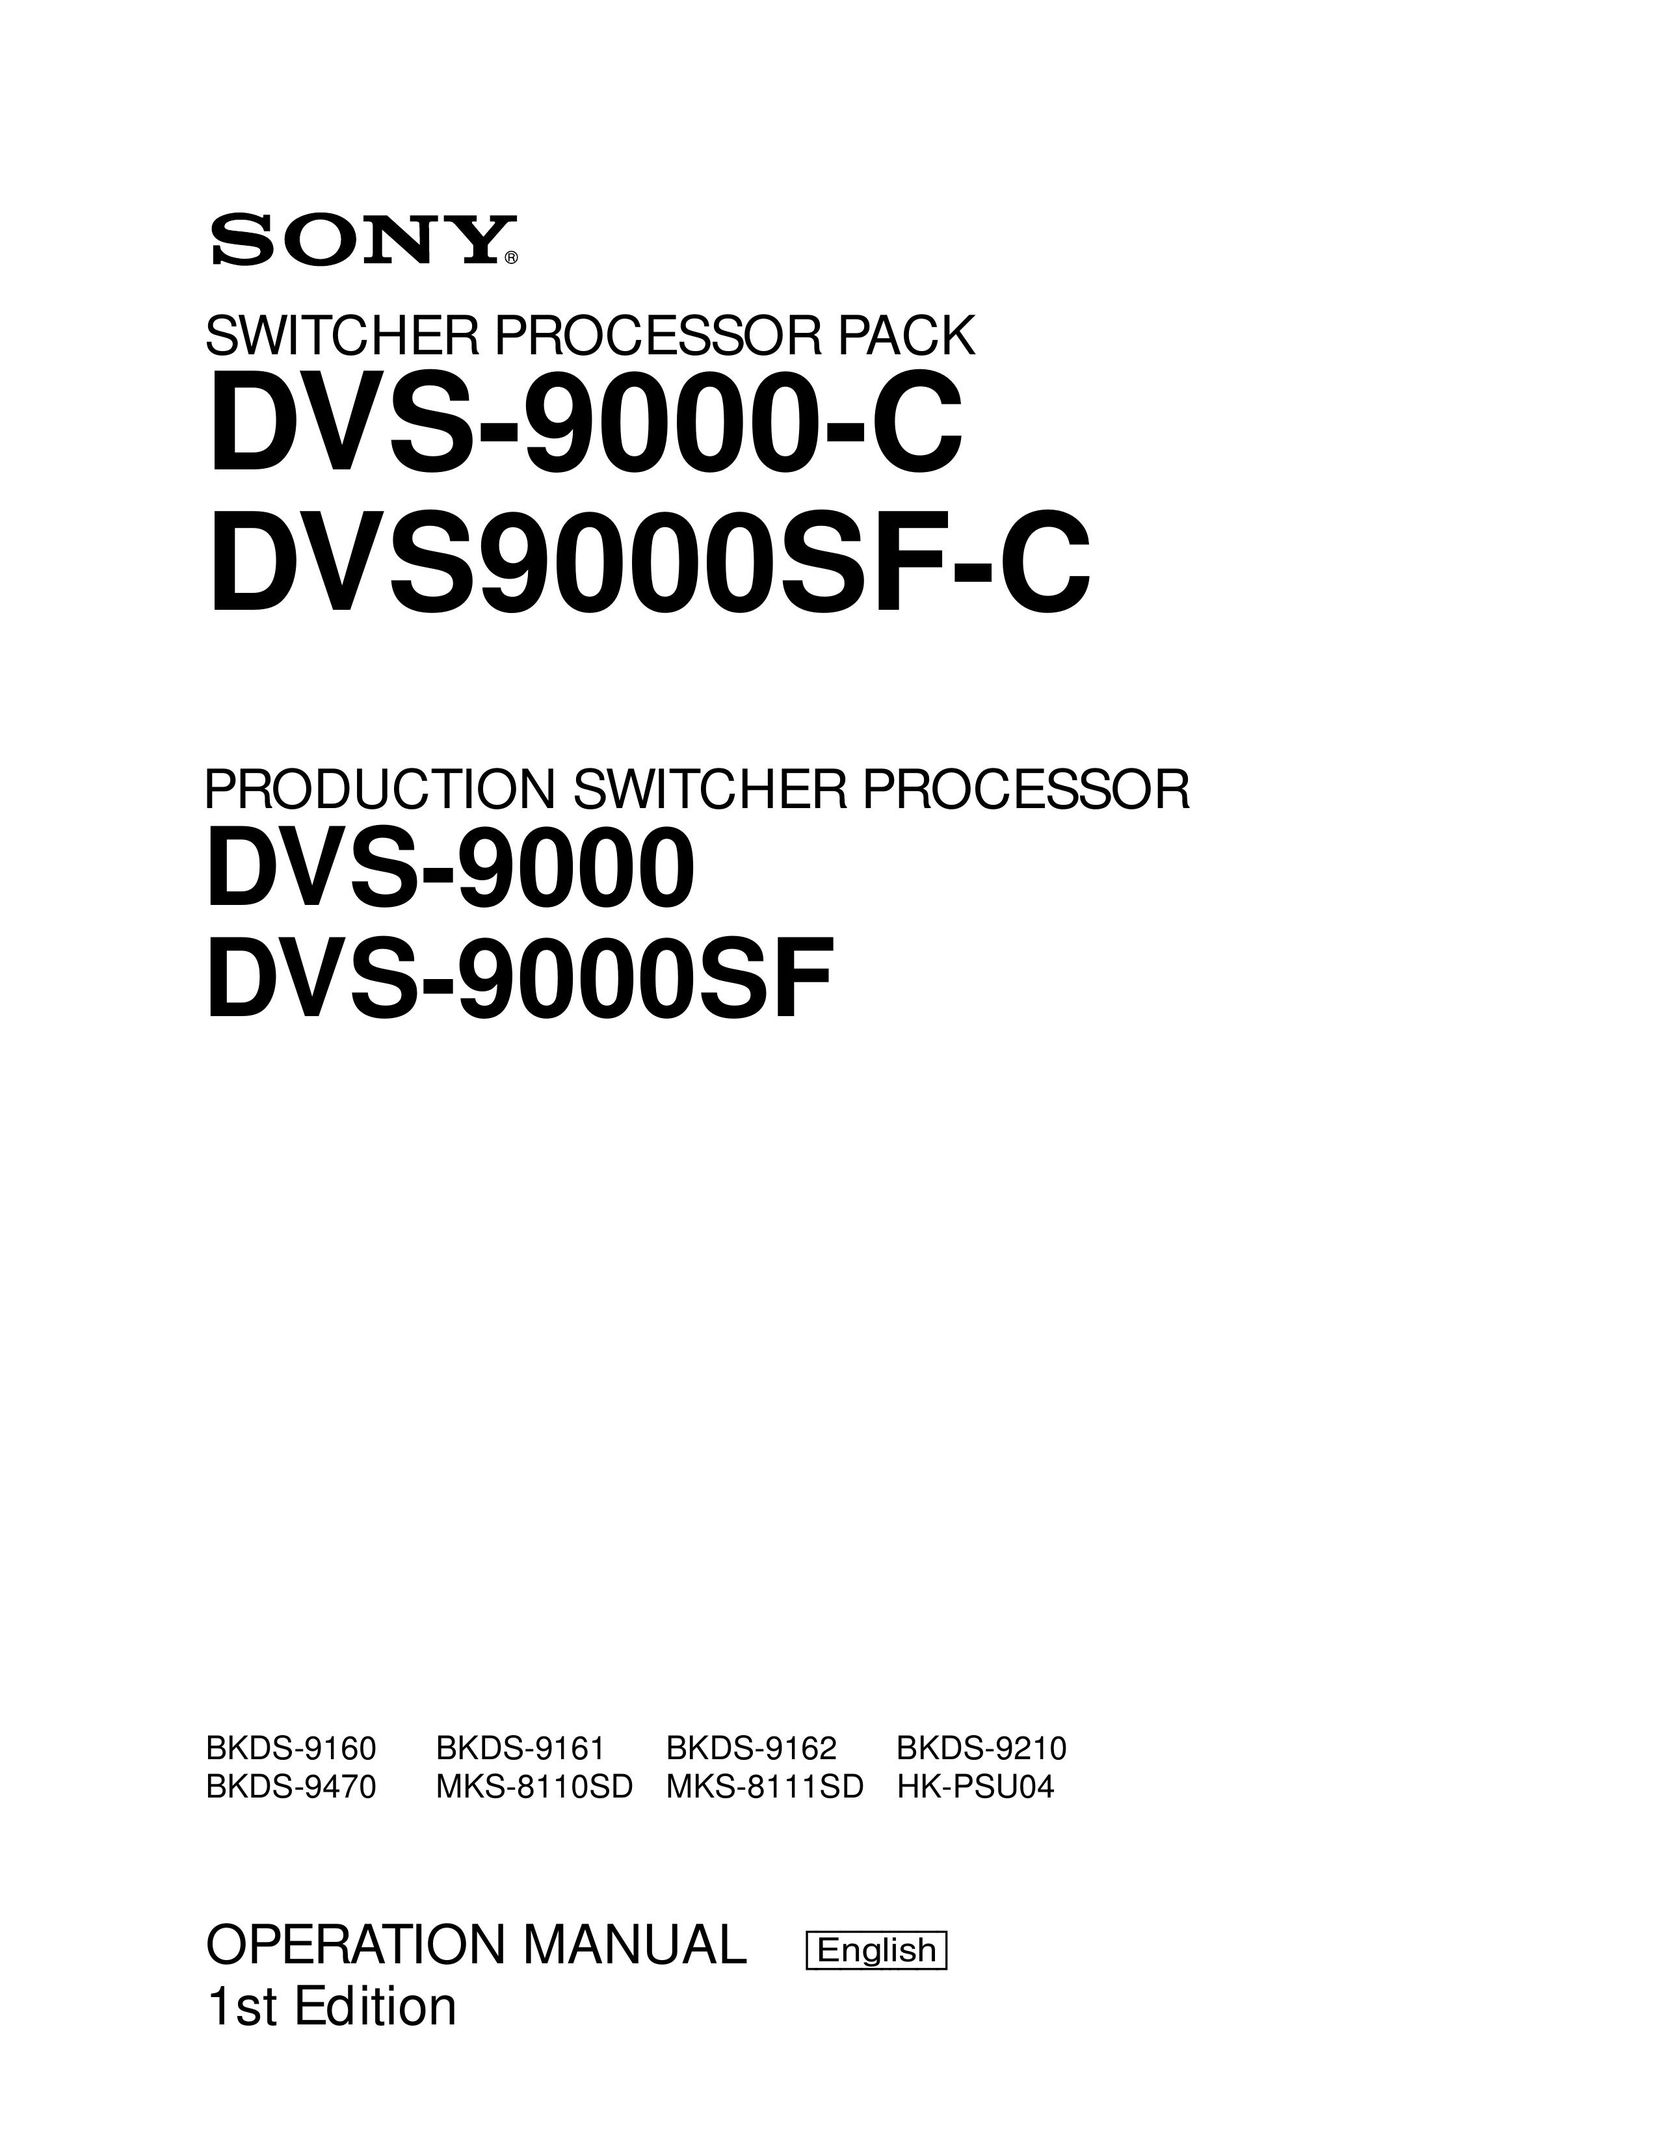 Sony DVS9000SF-C, DVS-9000-C, DVS-9000, DVS-9000SF, BKDS-9160, BKDS-9161, BKDS-9162, BKDS-9210, BKDS-9470, MKS-8110SD, MKS-8111SD, HK-PSU04 Switch User Manual